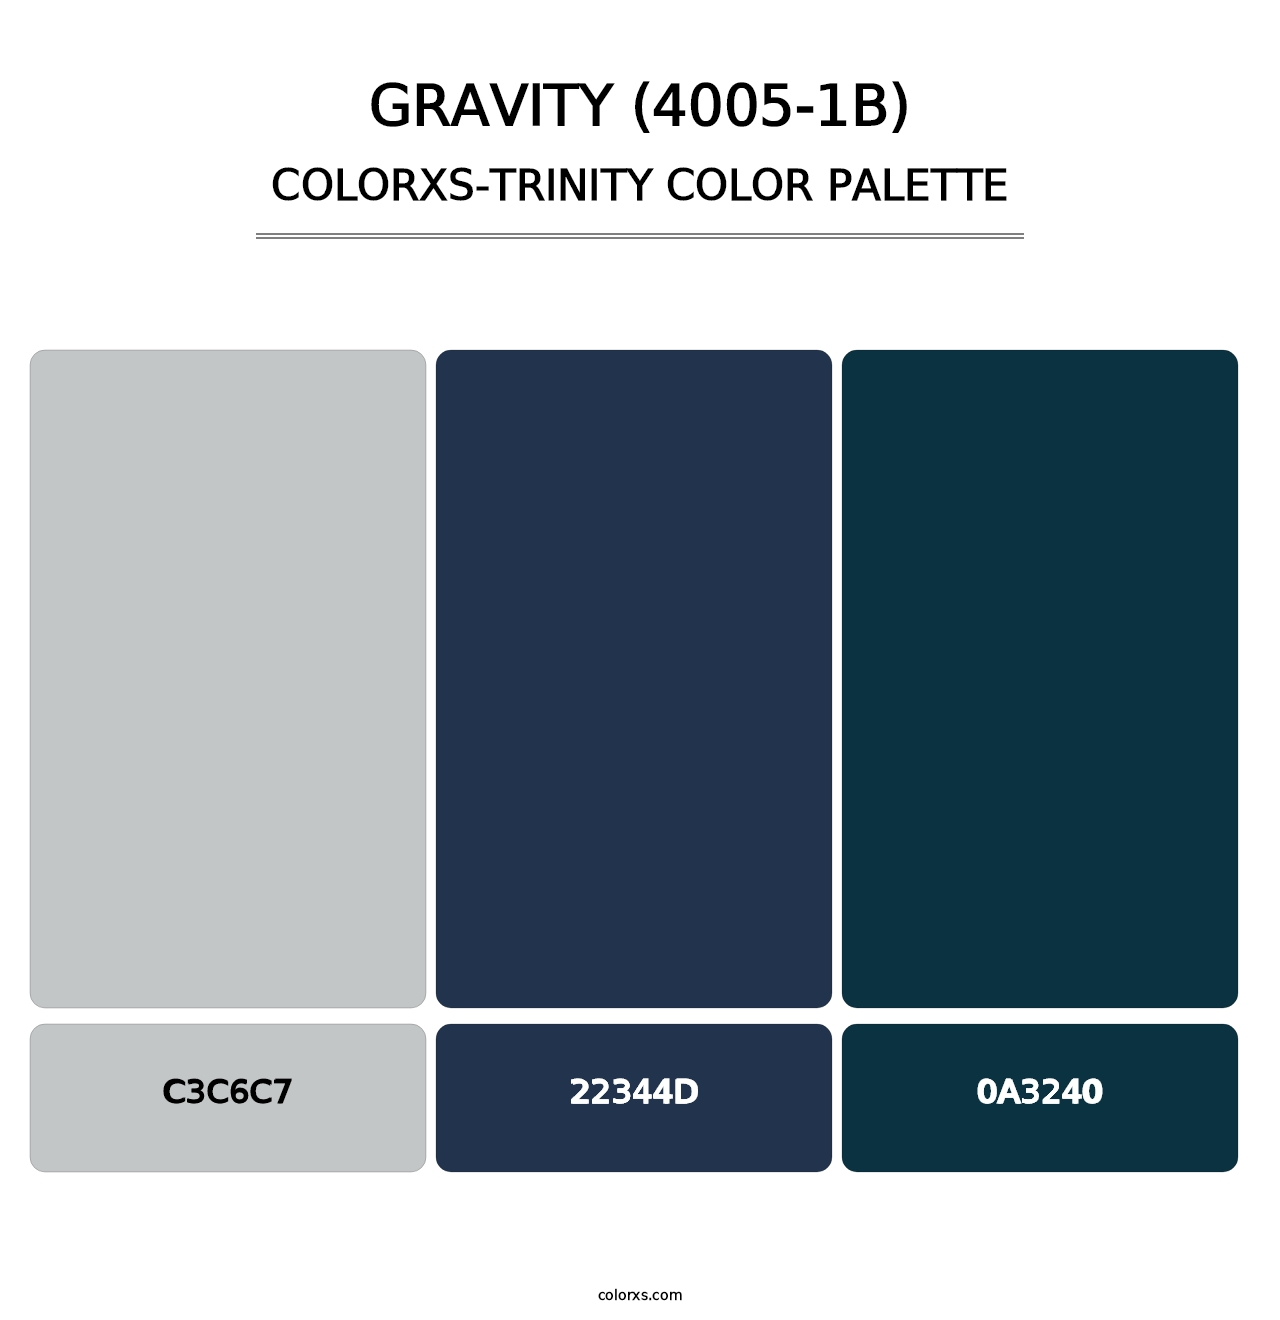 Gravity (4005-1B) - Colorxs Trinity Palette